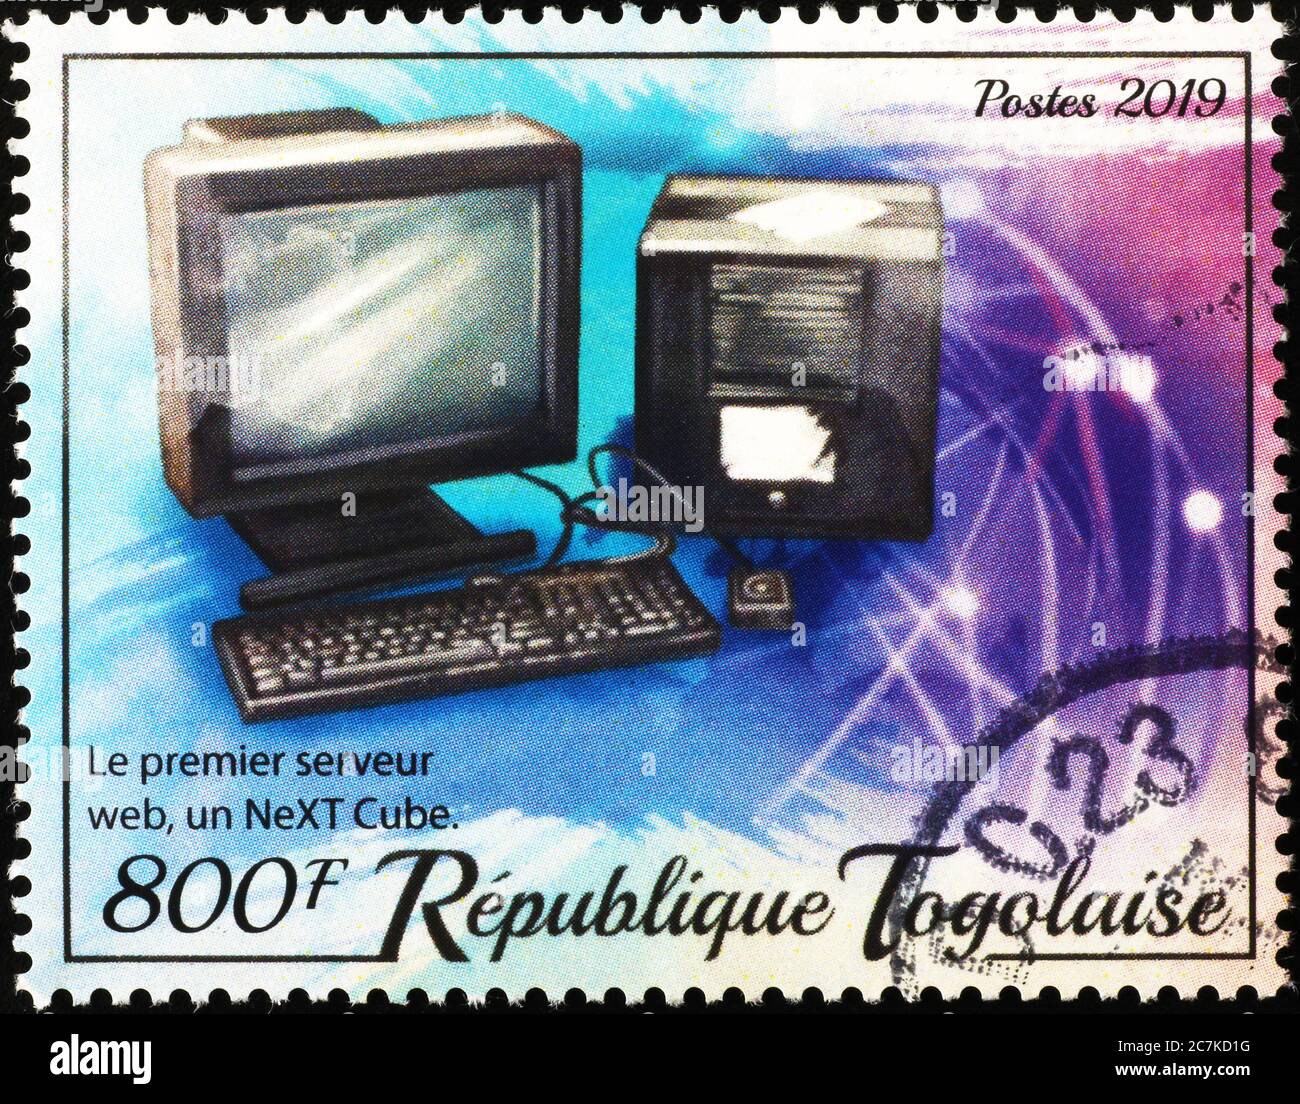 Le premier SERVEUR WEB a célébré sur le timbre-poste Photo Stock - Alamy